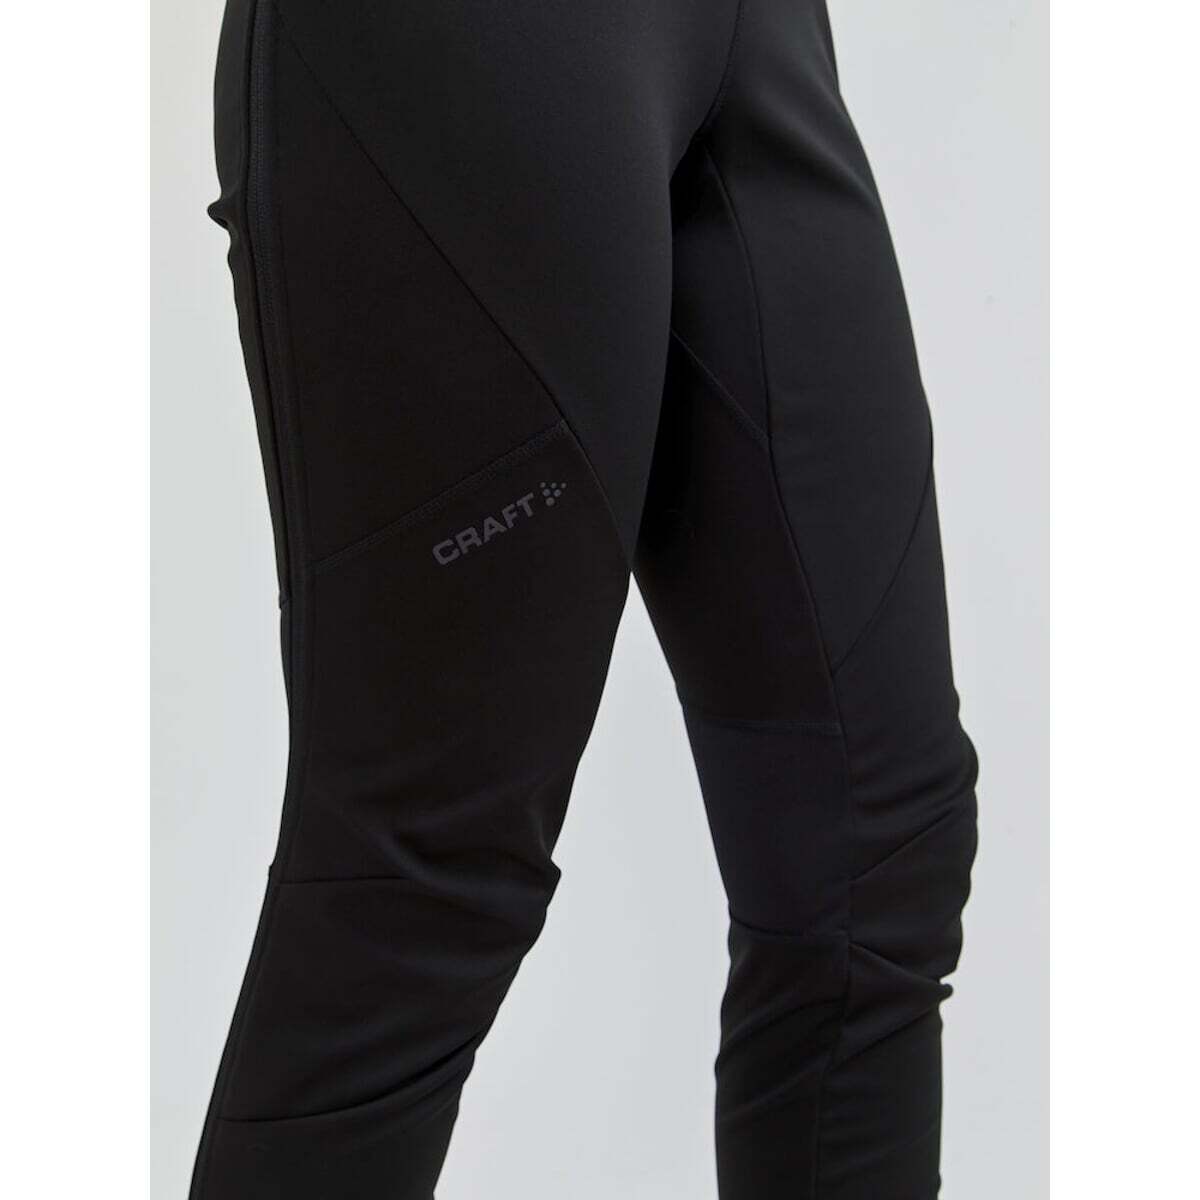 Женские лыжные брюки самосбросы Craft FZ Glide - 4